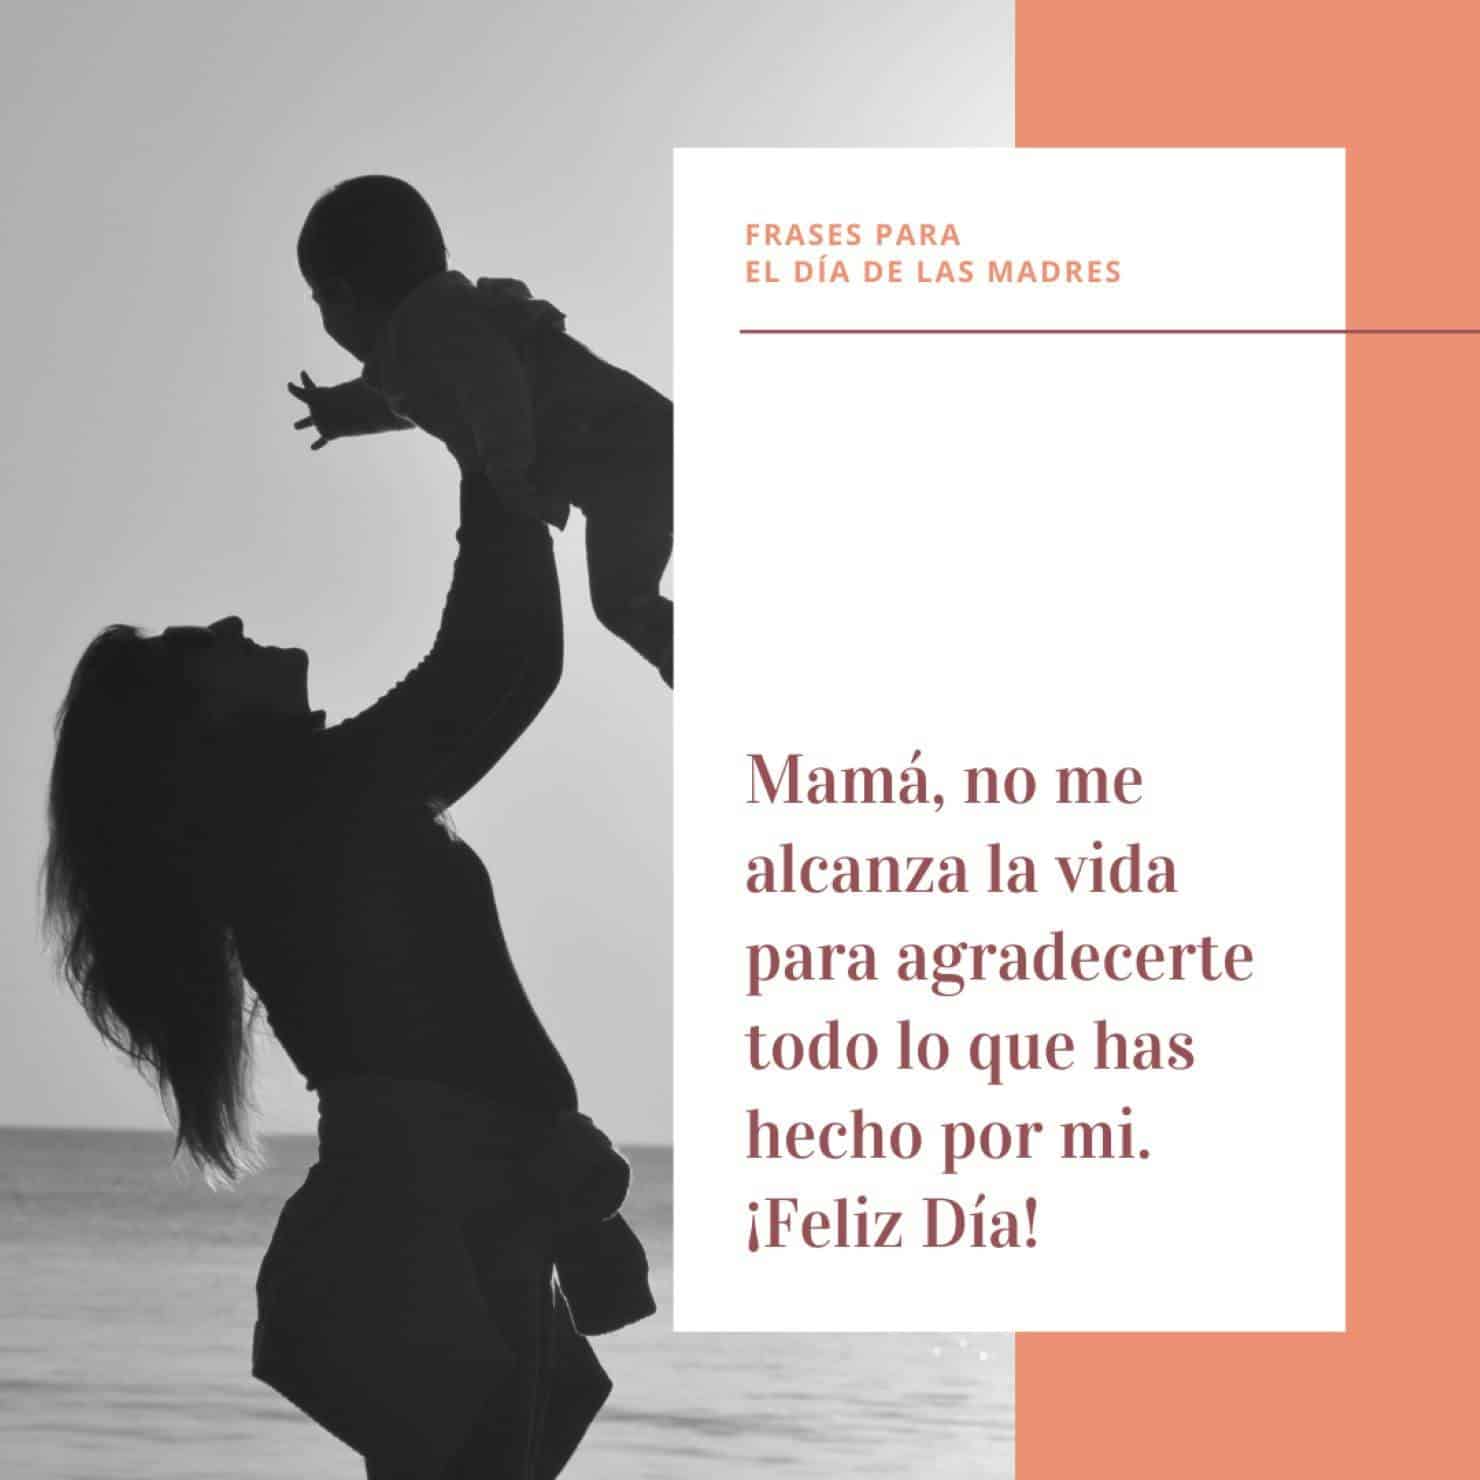 Frases para el Día de las Madres en México